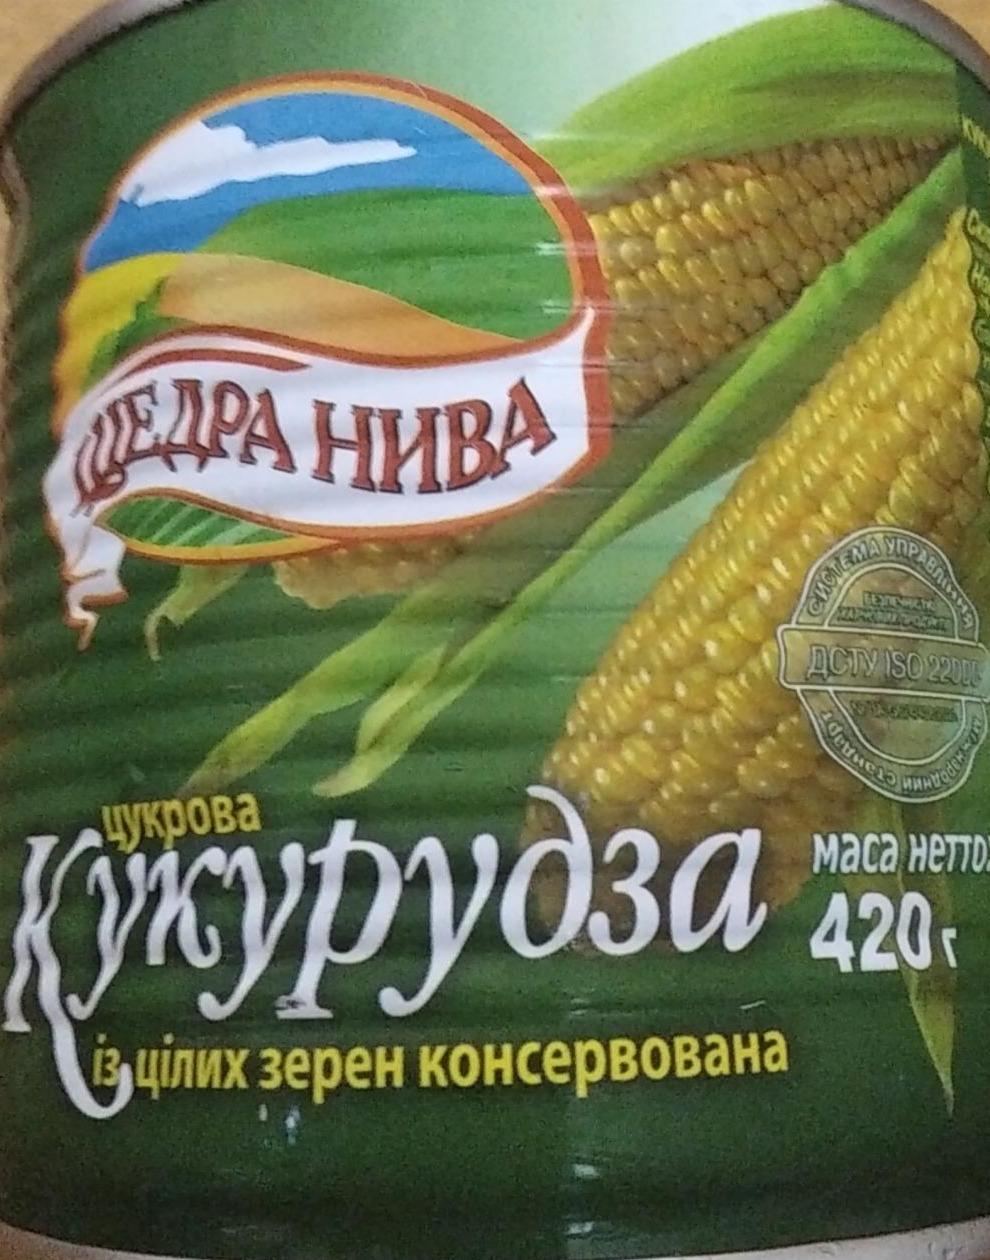 Фото - Цукрова кукурудза із цілих зерен стерилізована Щедра нива